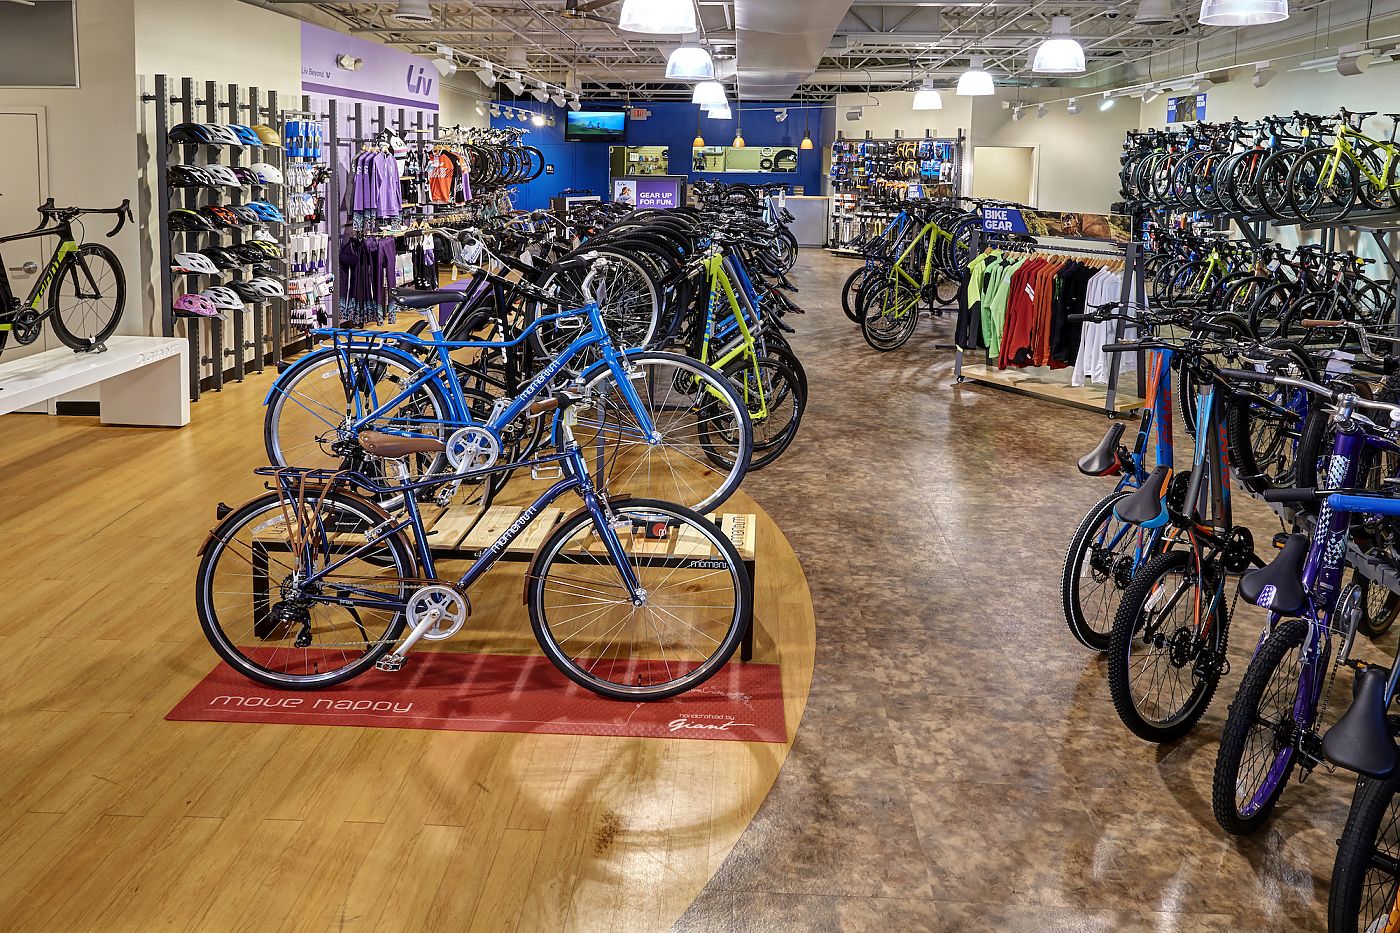 giant bike store